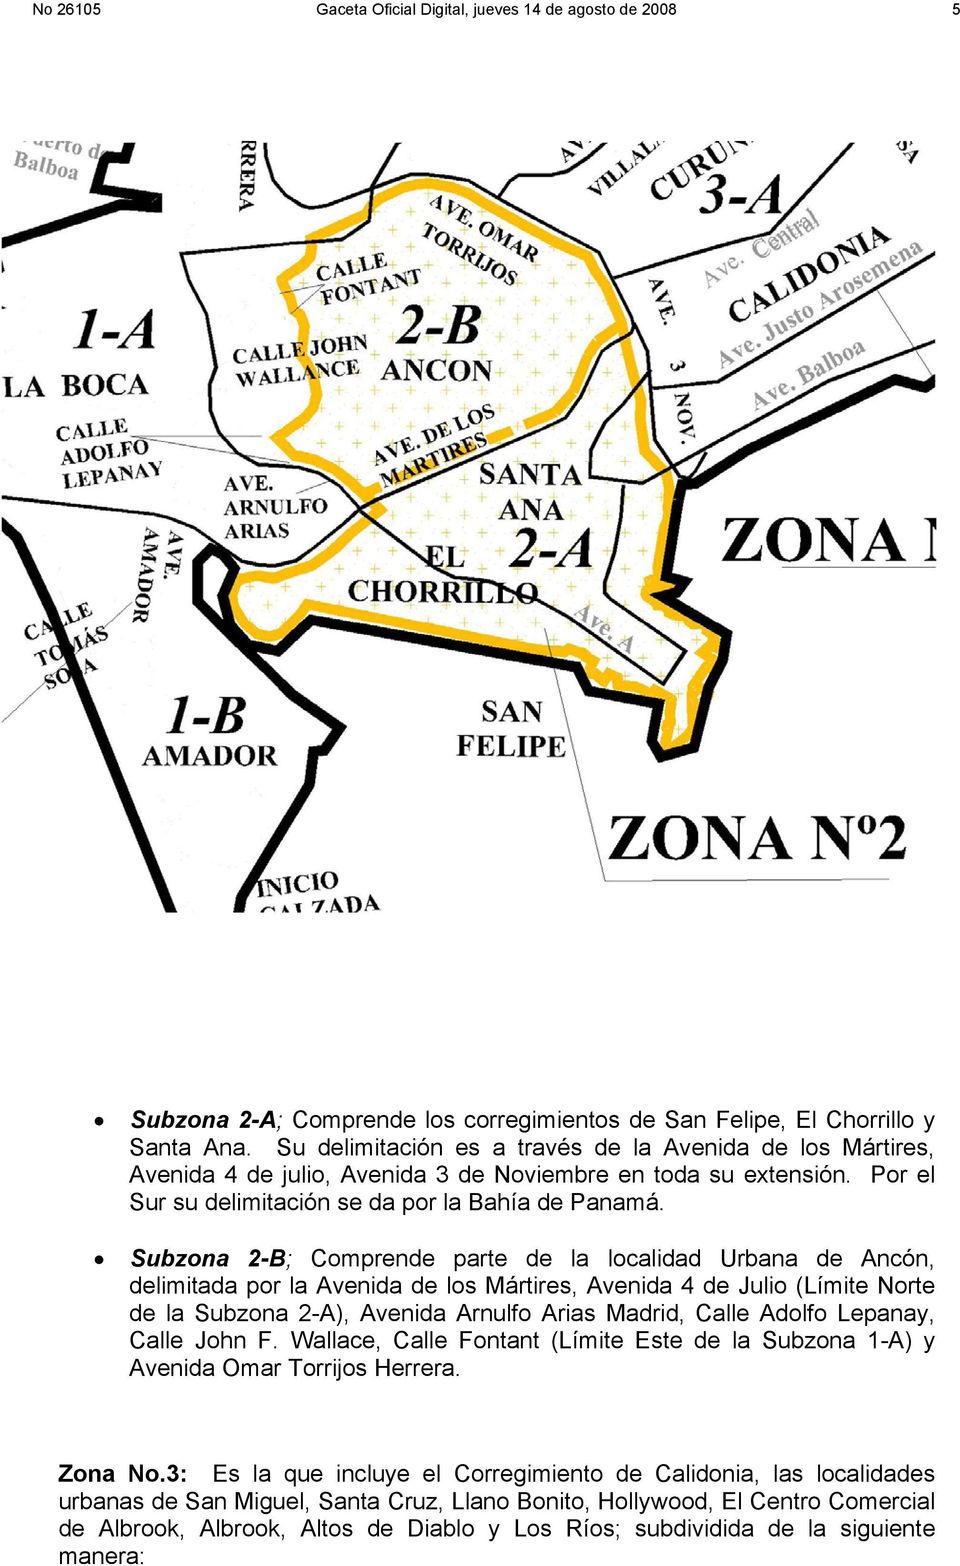 Subzona 2-B; Comprende parte de la localidad Urbana de Ancón, delimitada por la Avenida de los Mártires, Avenida 4 de Julio (Límite Norte de la Subzona 2-A), Avenida Arnulfo Arias Madrid, Calle